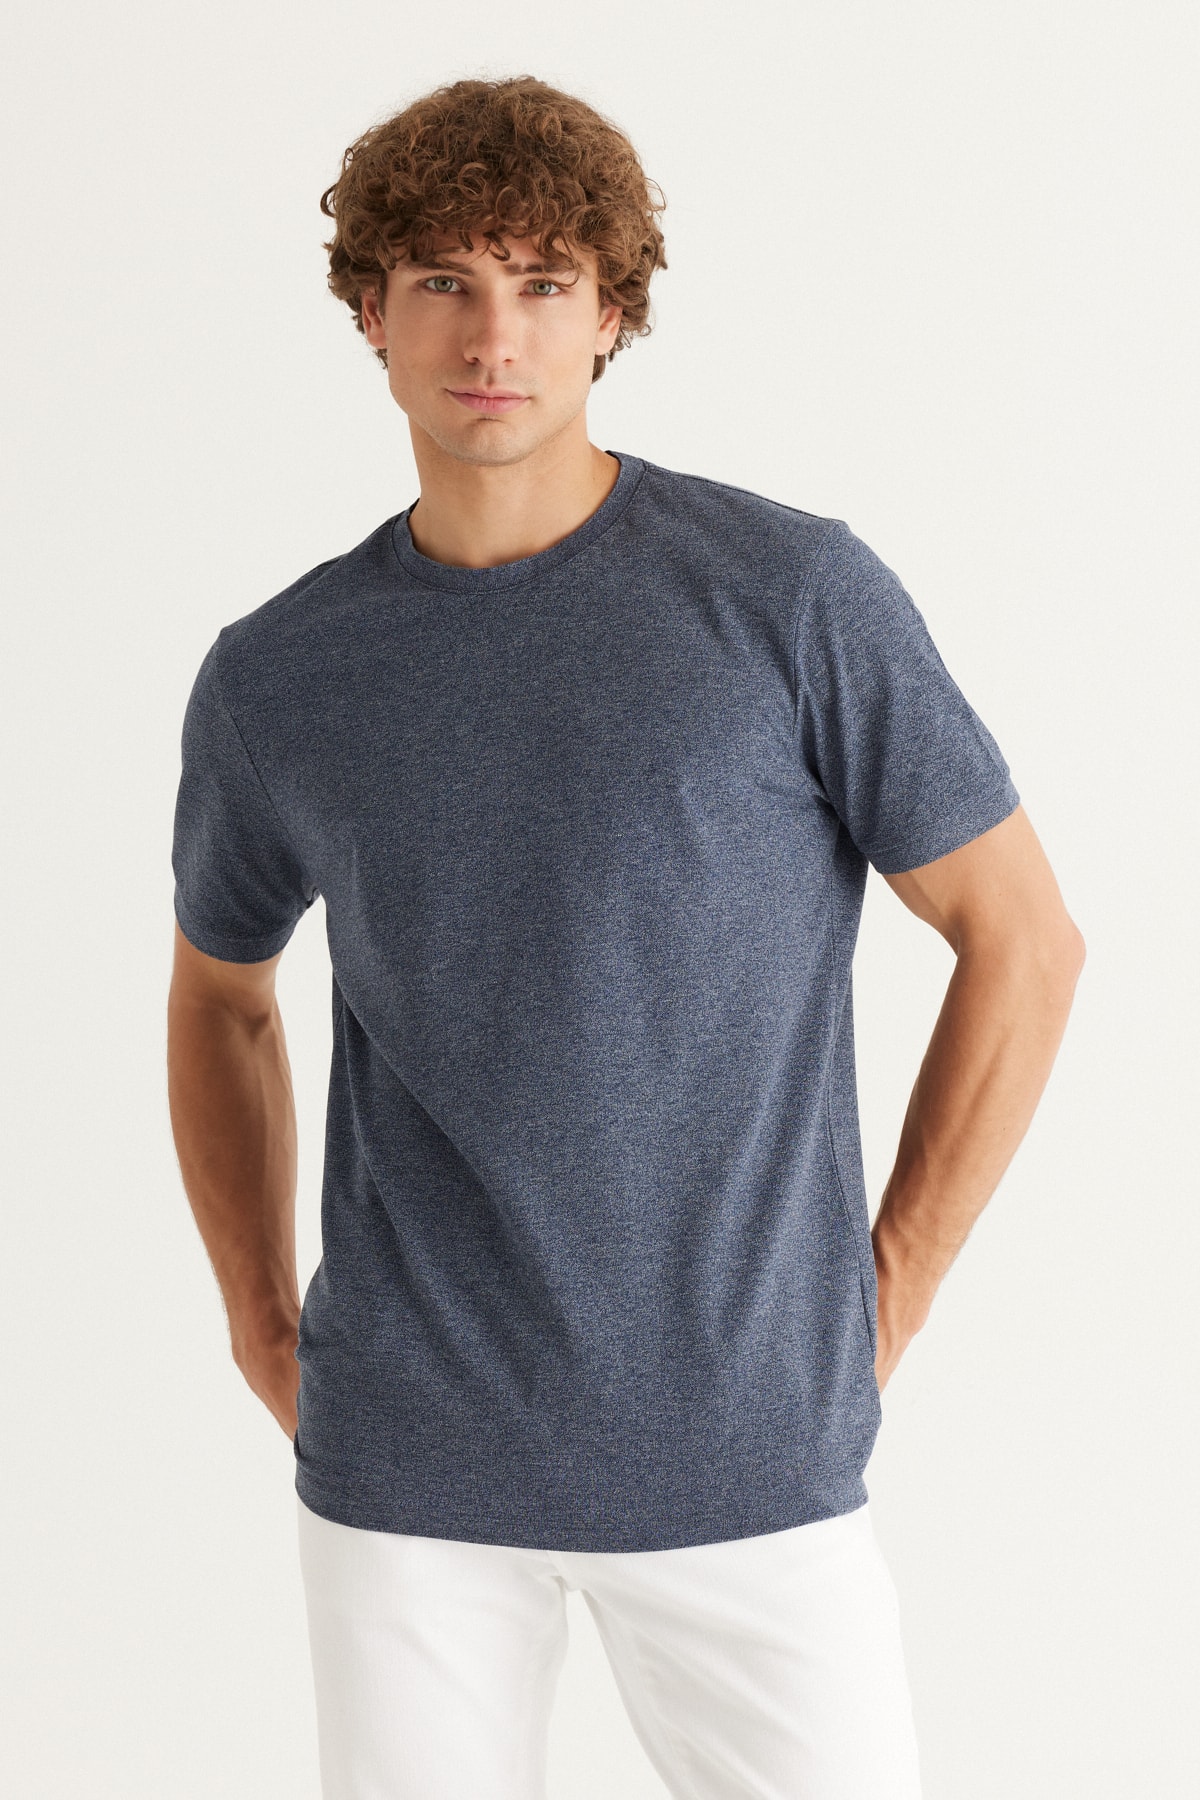 AC&Co / Altınyıldız Classics Men's Navy Blue Melange Slim Fit Narrow Cut Crew Neck Cotton T-Shirt